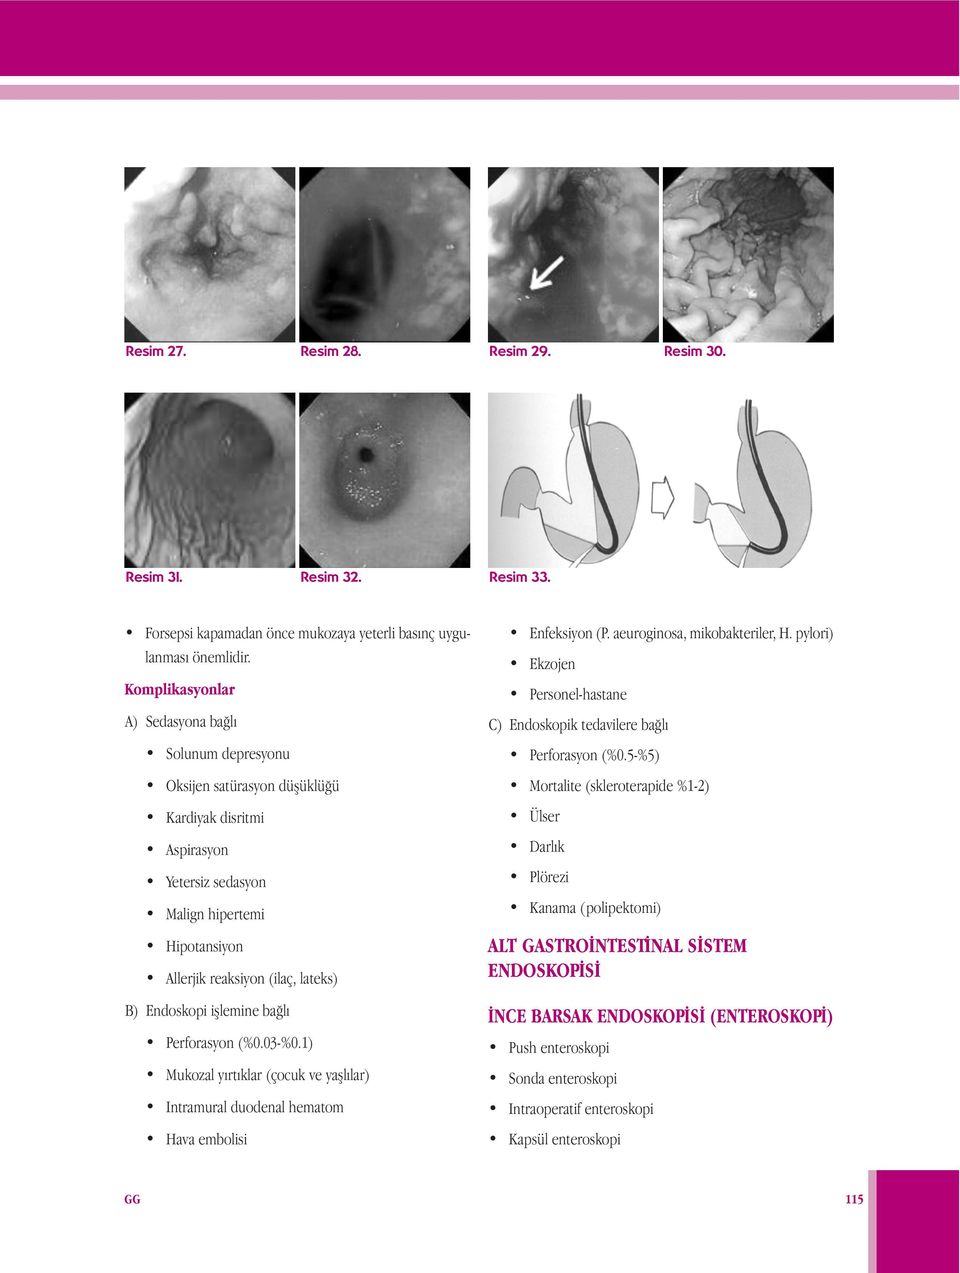 Endoskopi işlemine bağlı Perforasyon (%0.03-%0.1) Mukozal yırtıklar (çocuk ve yaşlılar) Intramural duodenal hematom Hava embolisi Enfeksiyon (P. aeuroginosa, mikobakteriler, H.